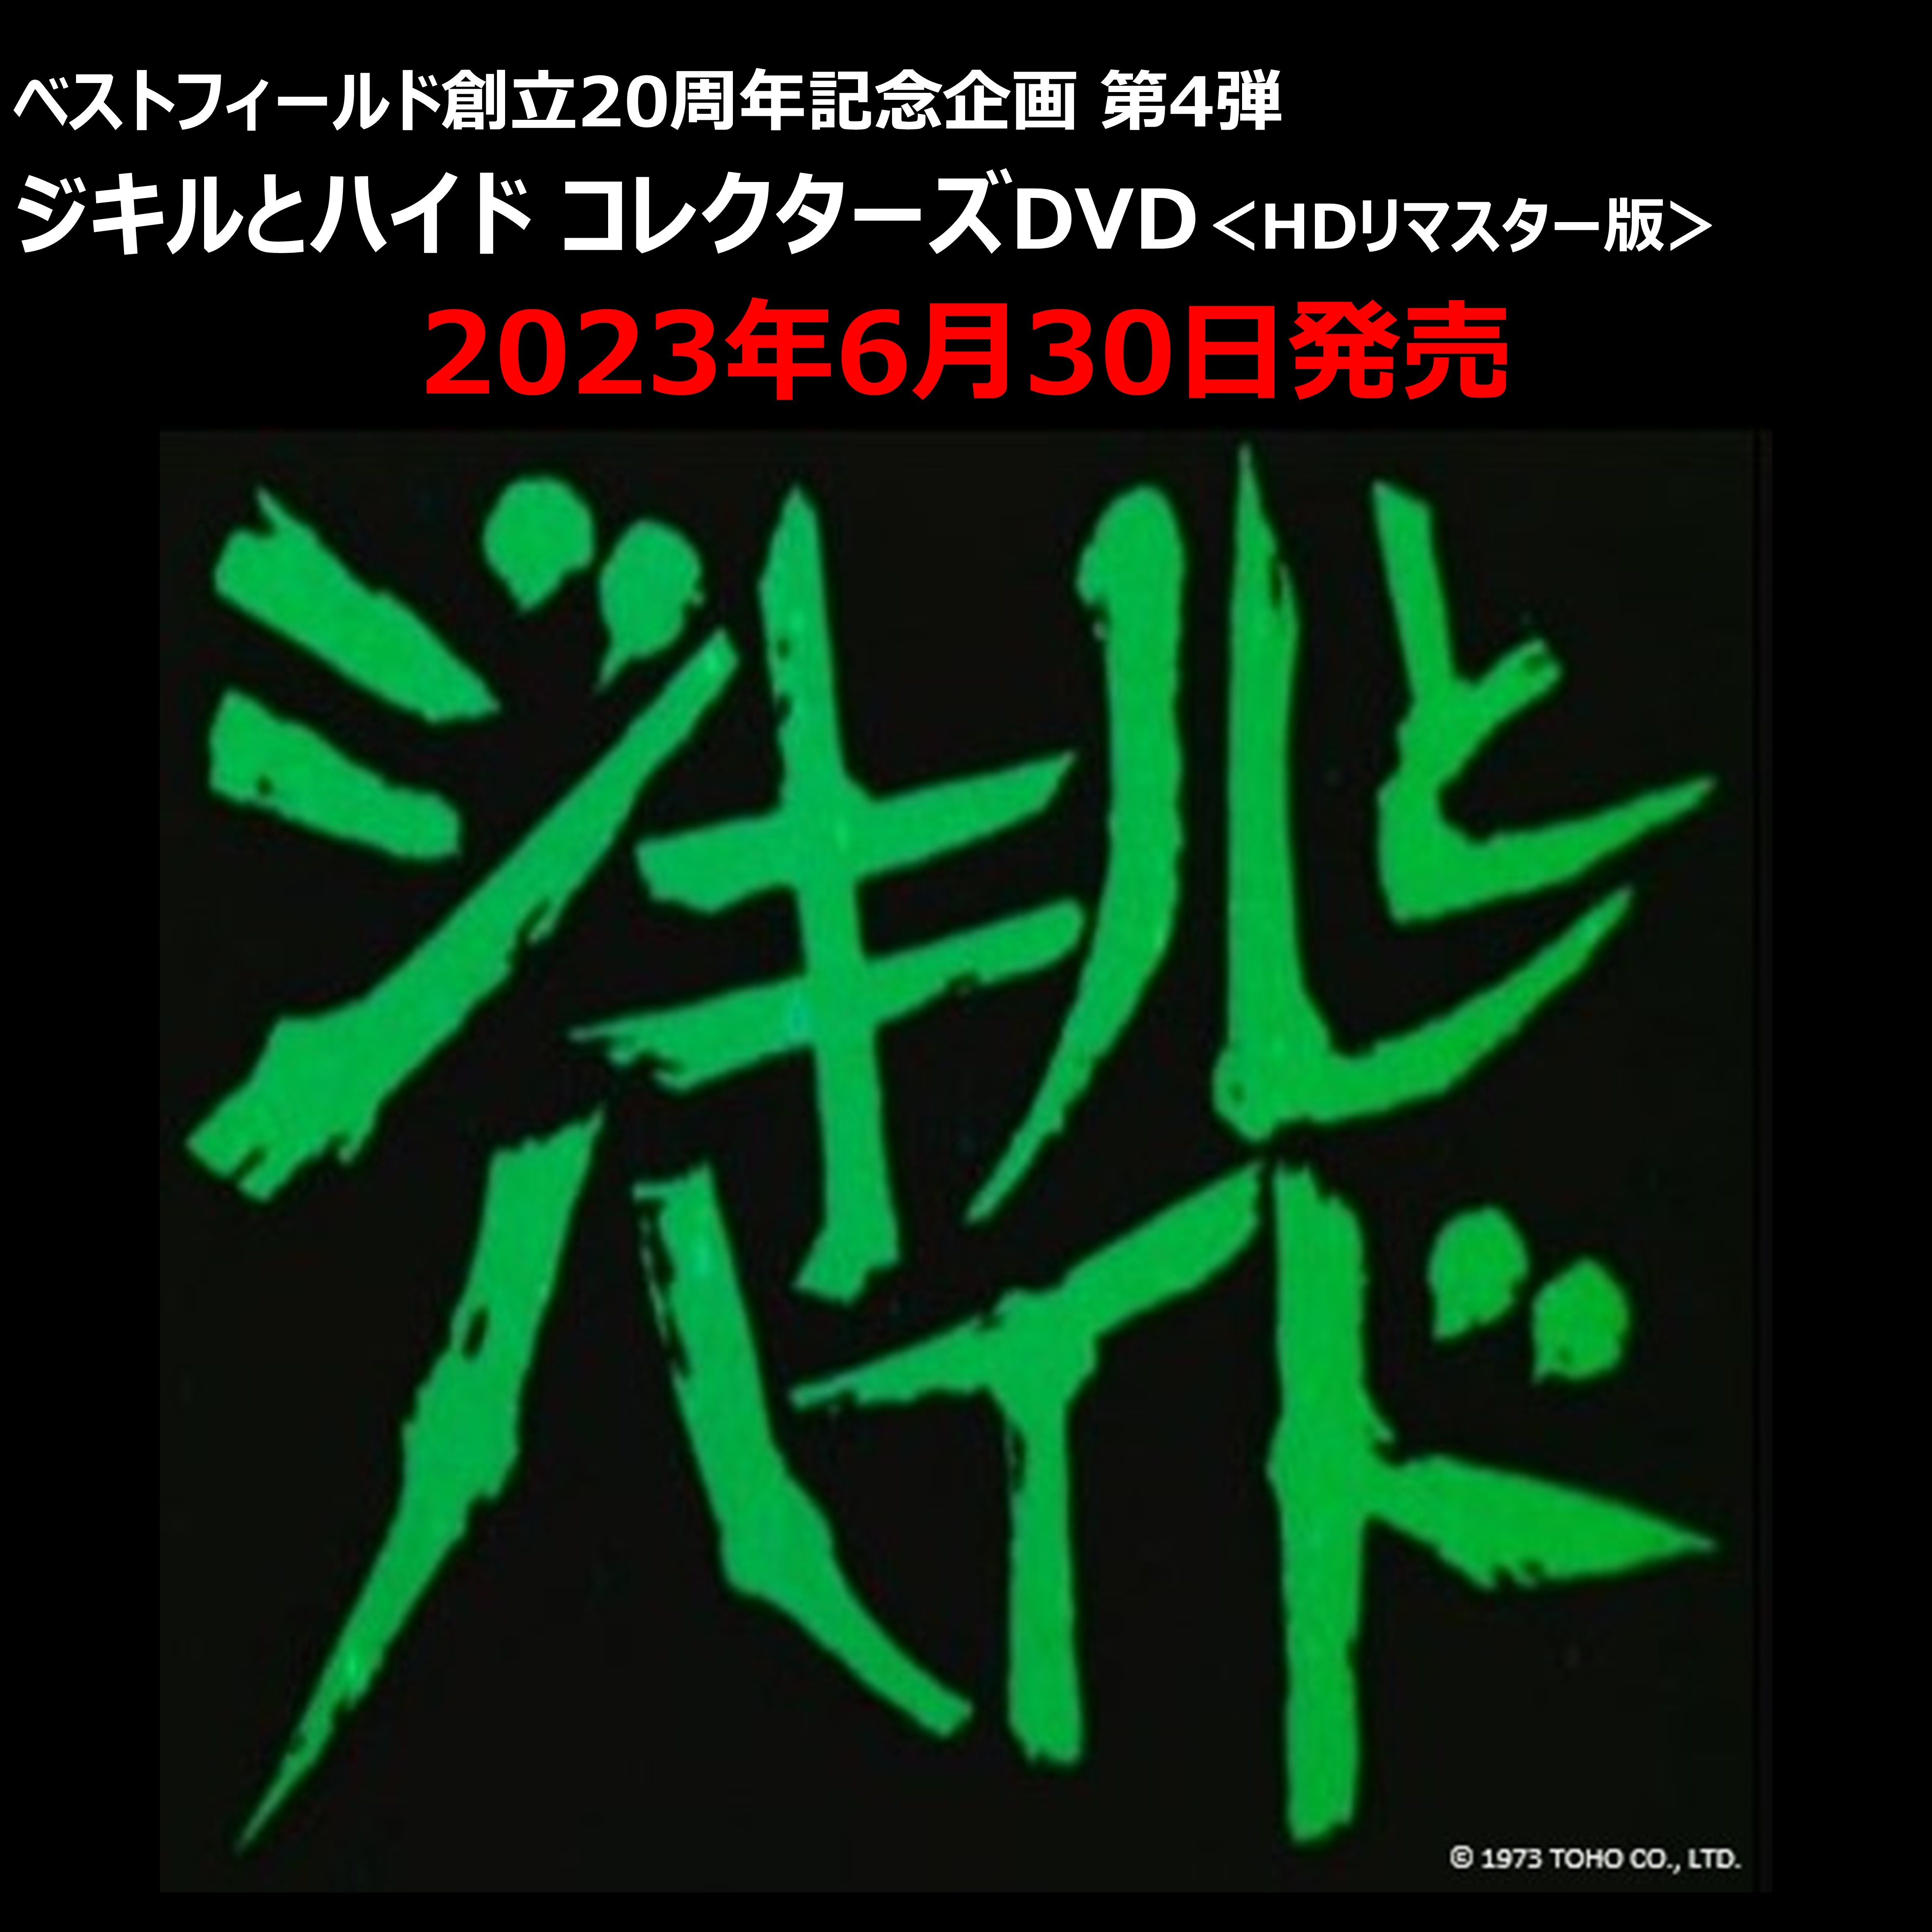 「2023バルカーカップ ジャパンオープンショーダンス選手権」開催